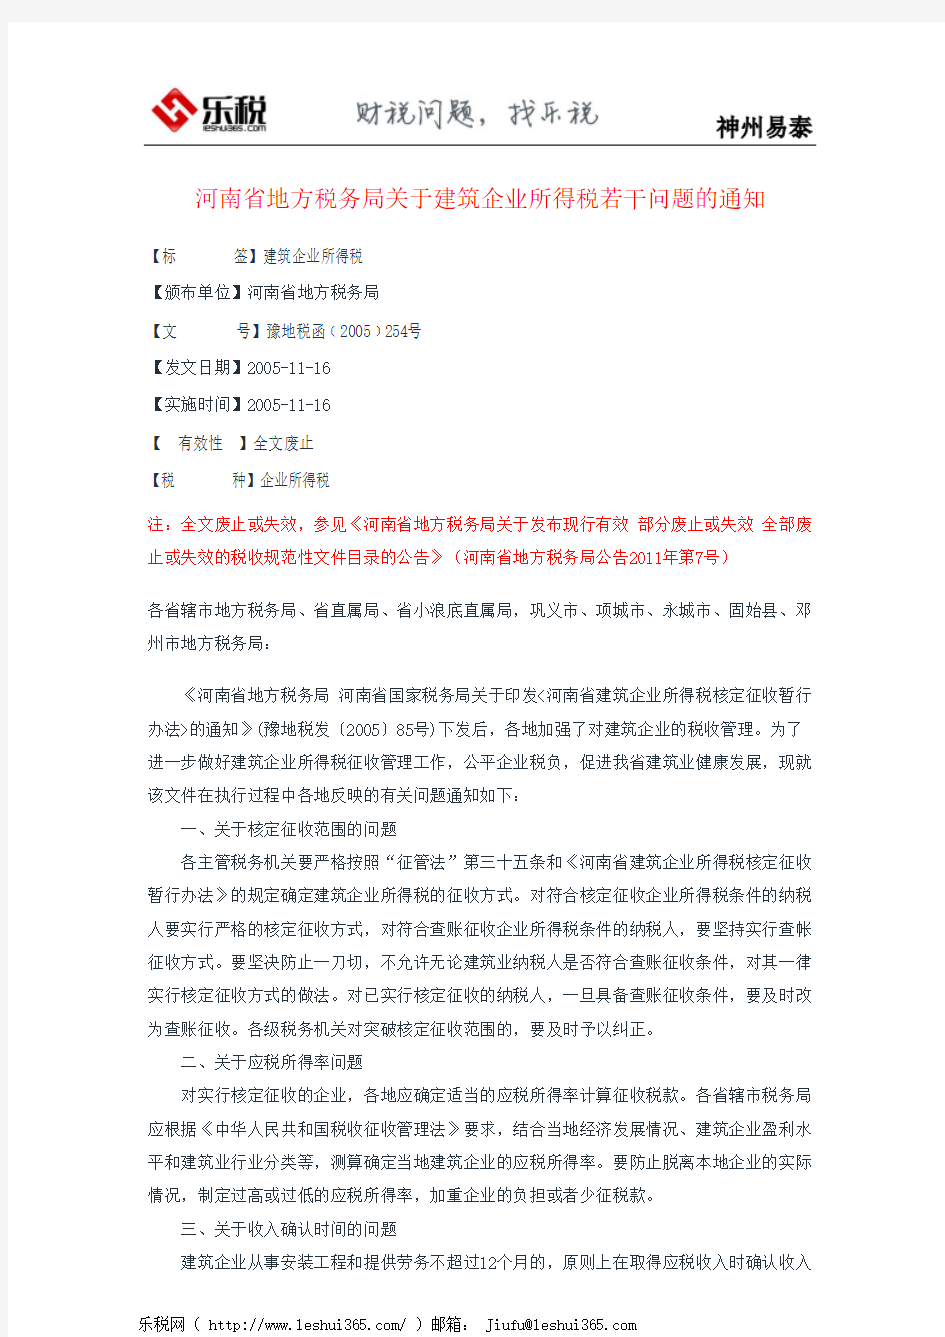 河南省地方税务局关于建筑企业所得税若干问题的通知